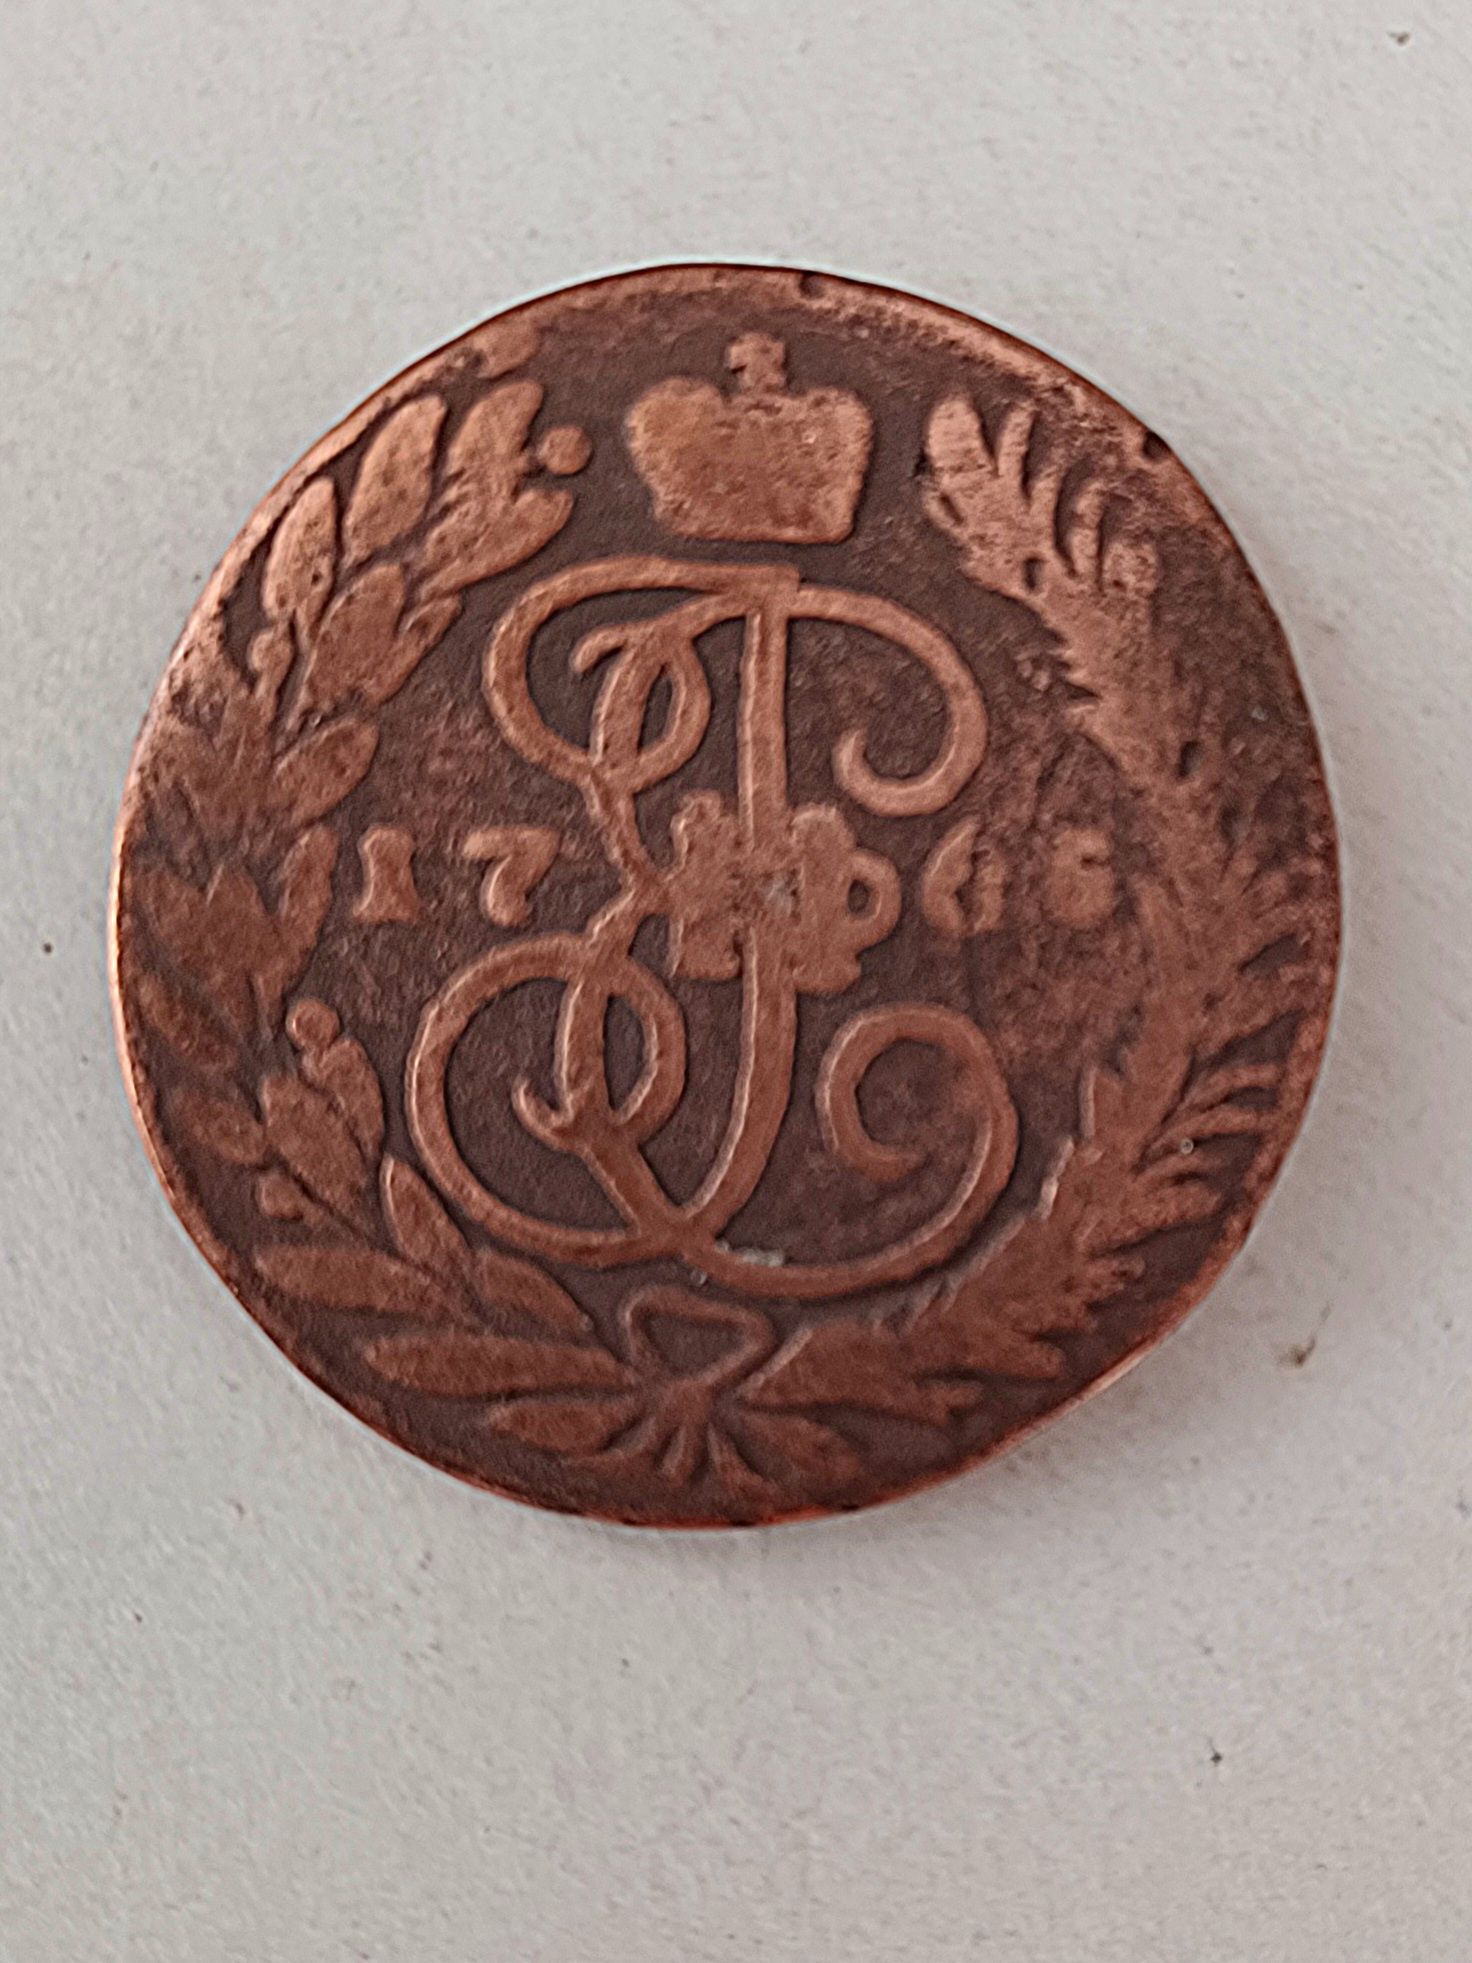 Pt colectionari Monedă din 1765 de pe timpul reginei Elisabeta ll